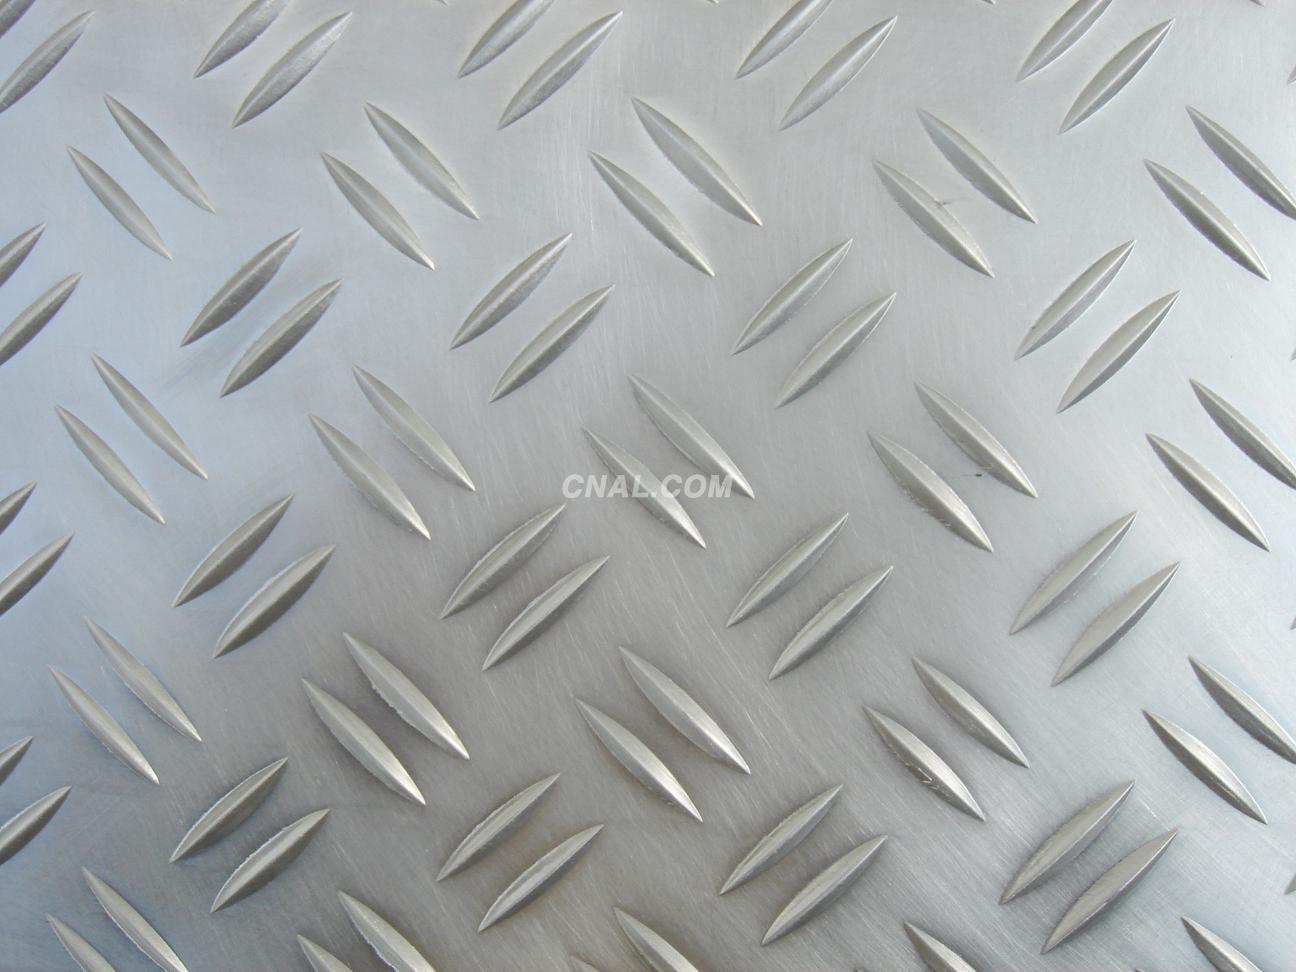 5052国标铝板 铝棒 铝条 铝厂家适用氧化 规格齐全 